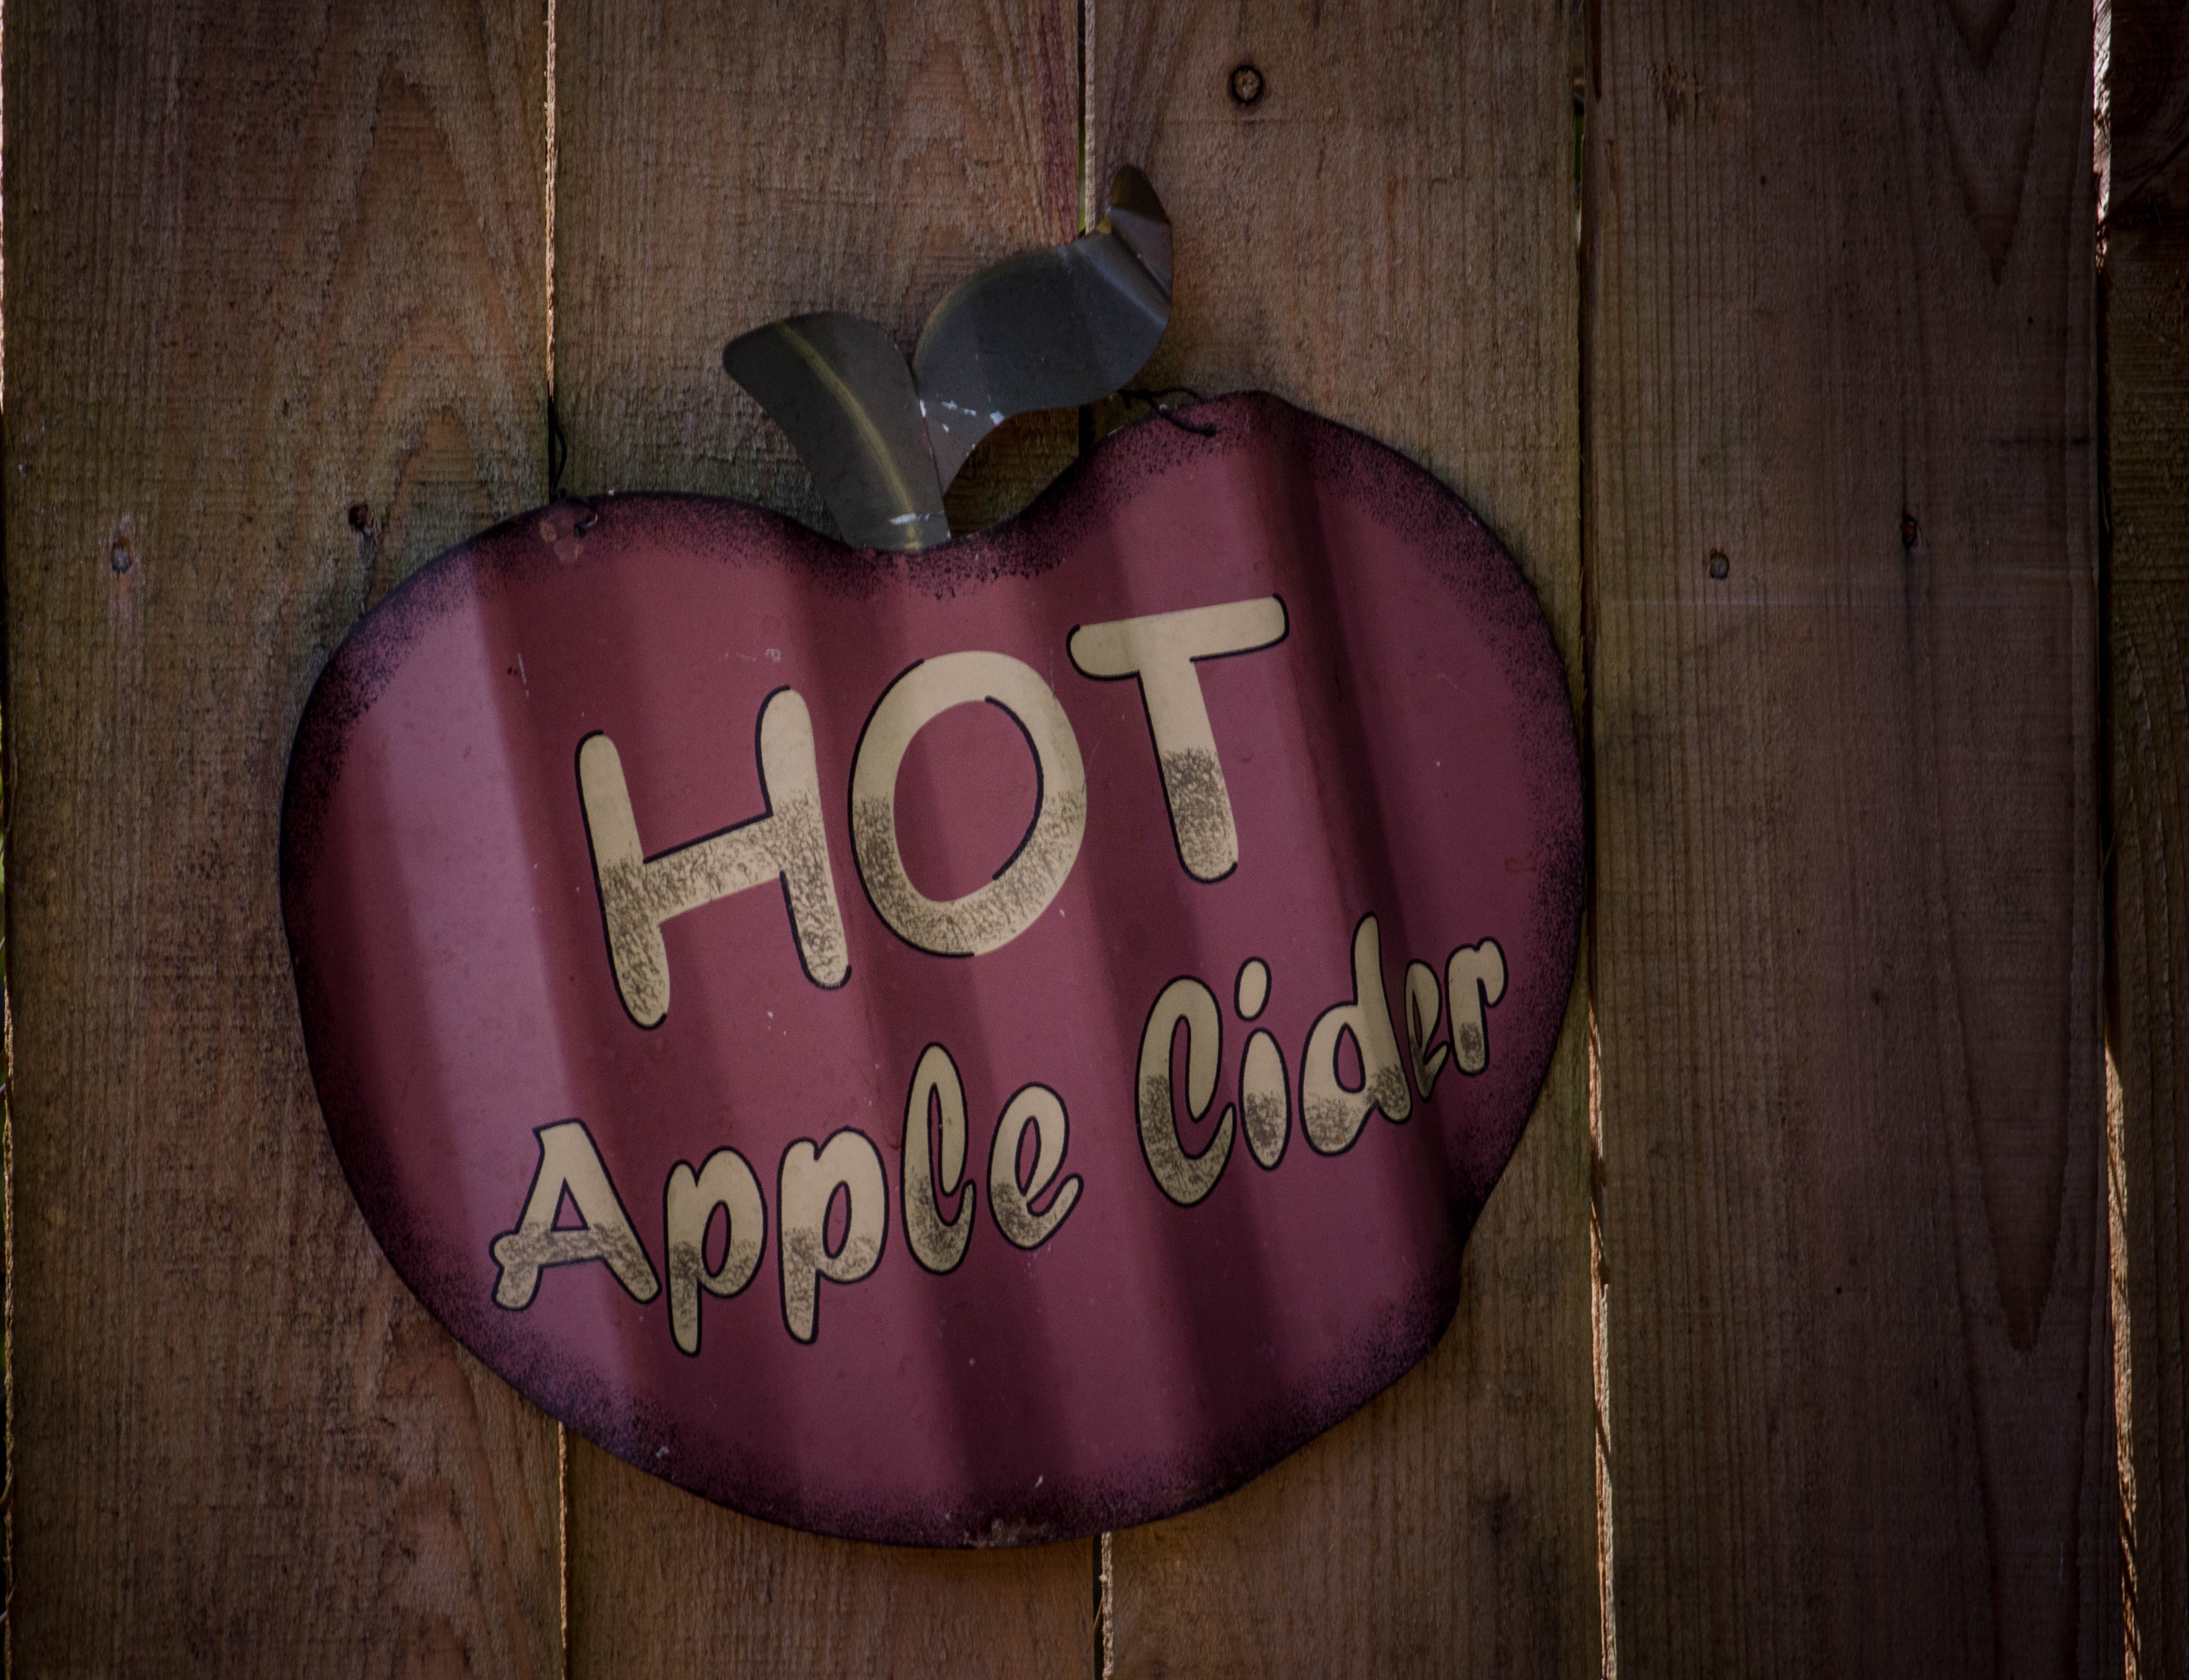 hot apple cider signage